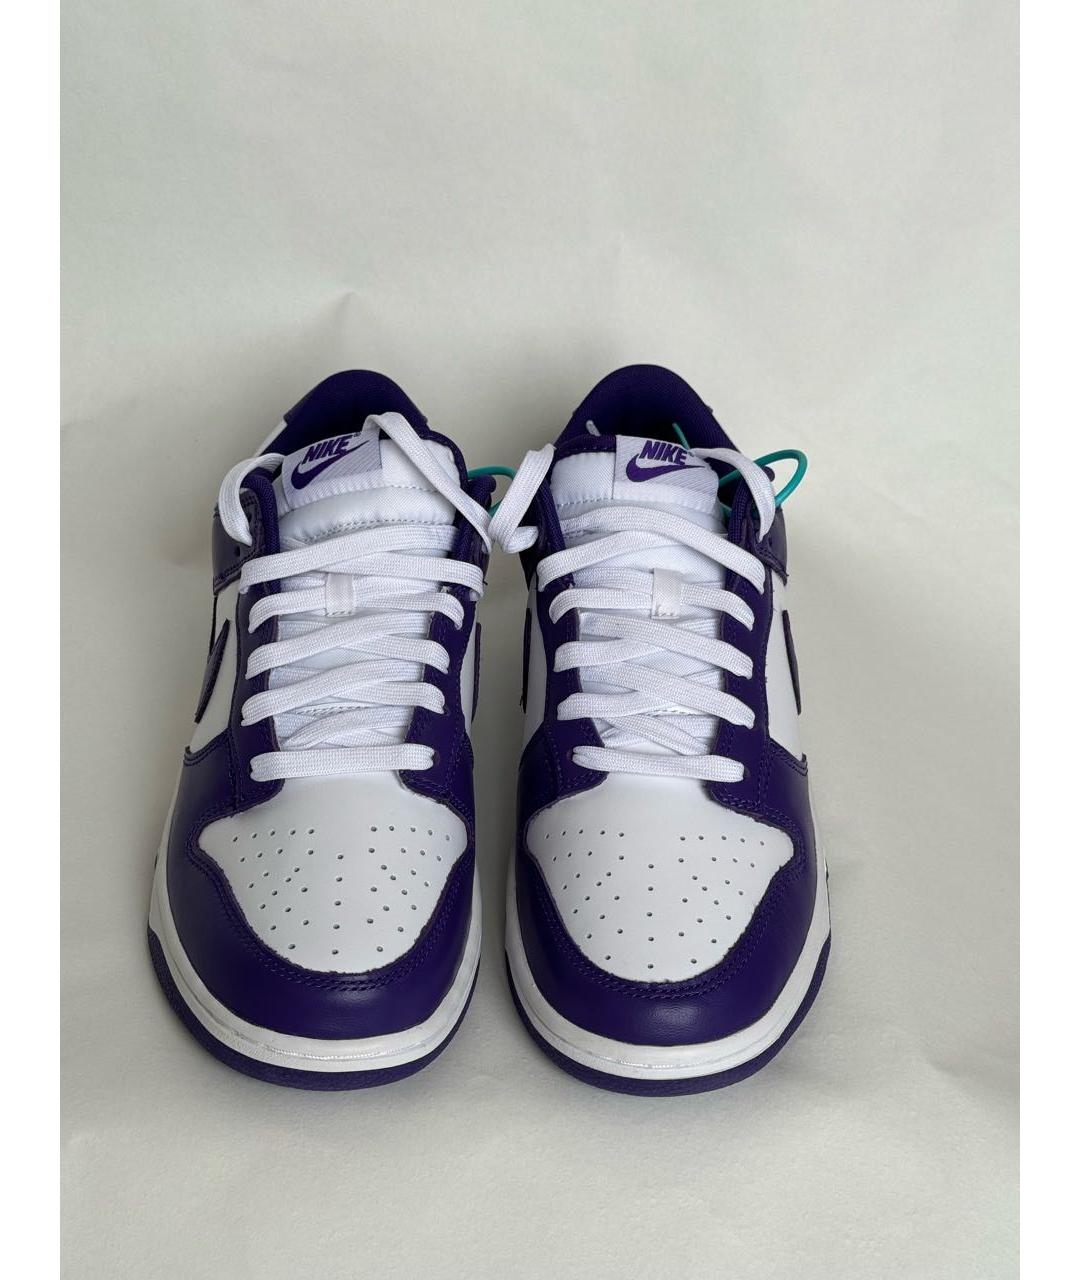 NIKE Фиолетовые кожаные низкие кроссовки / кеды, фото 2